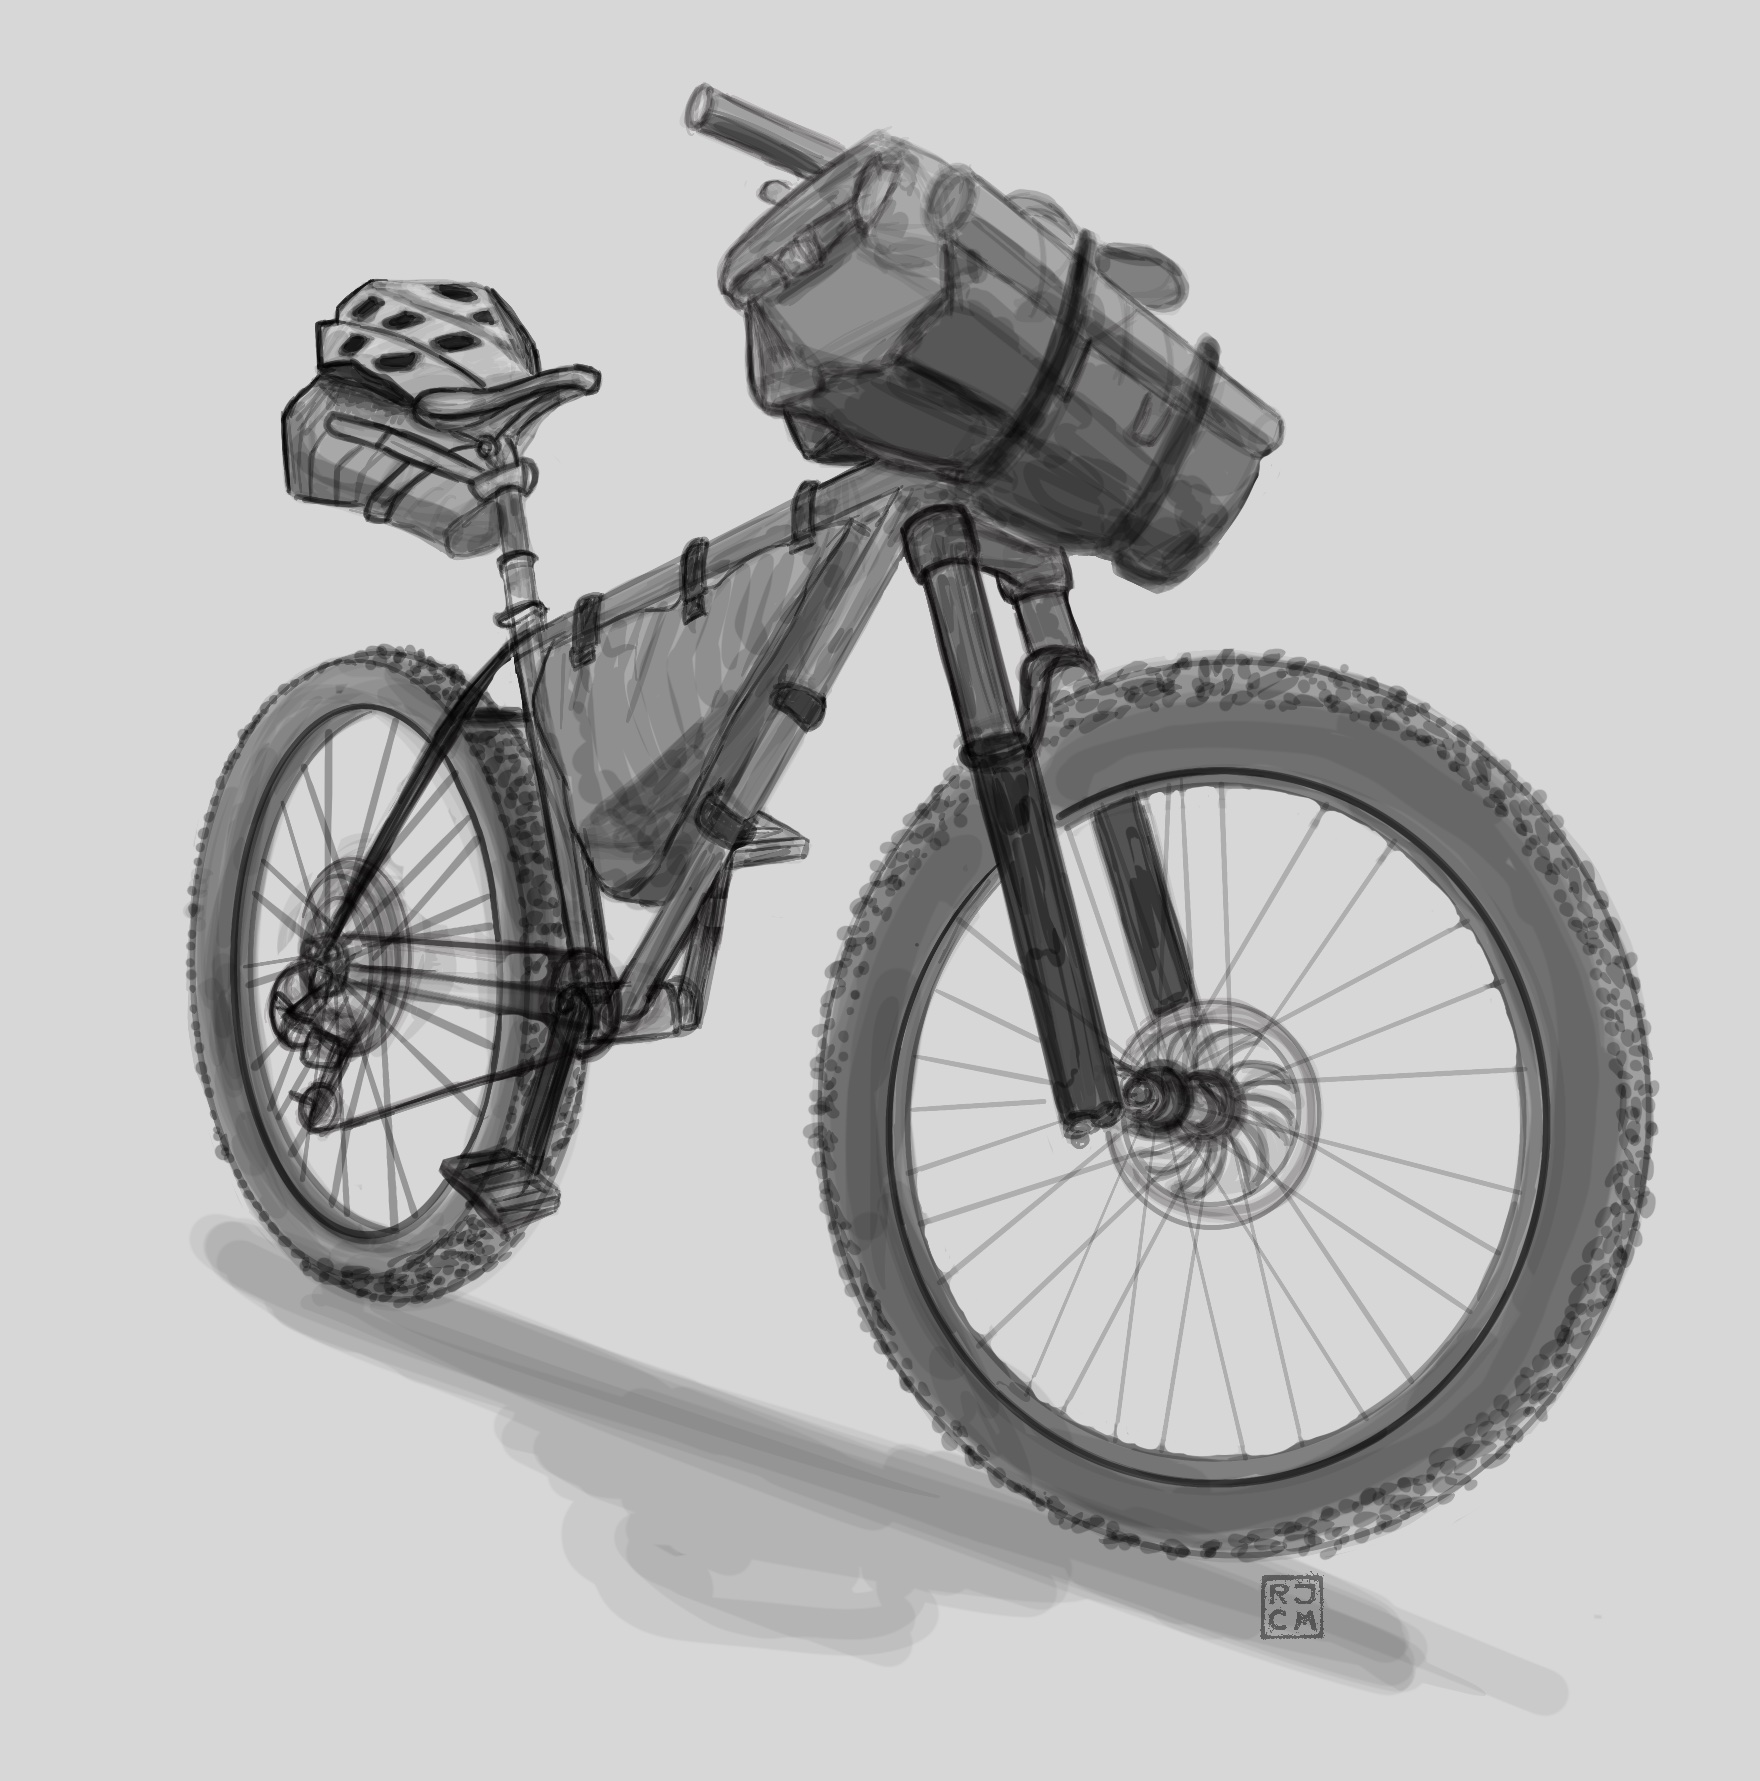 Bike packing bike set-up